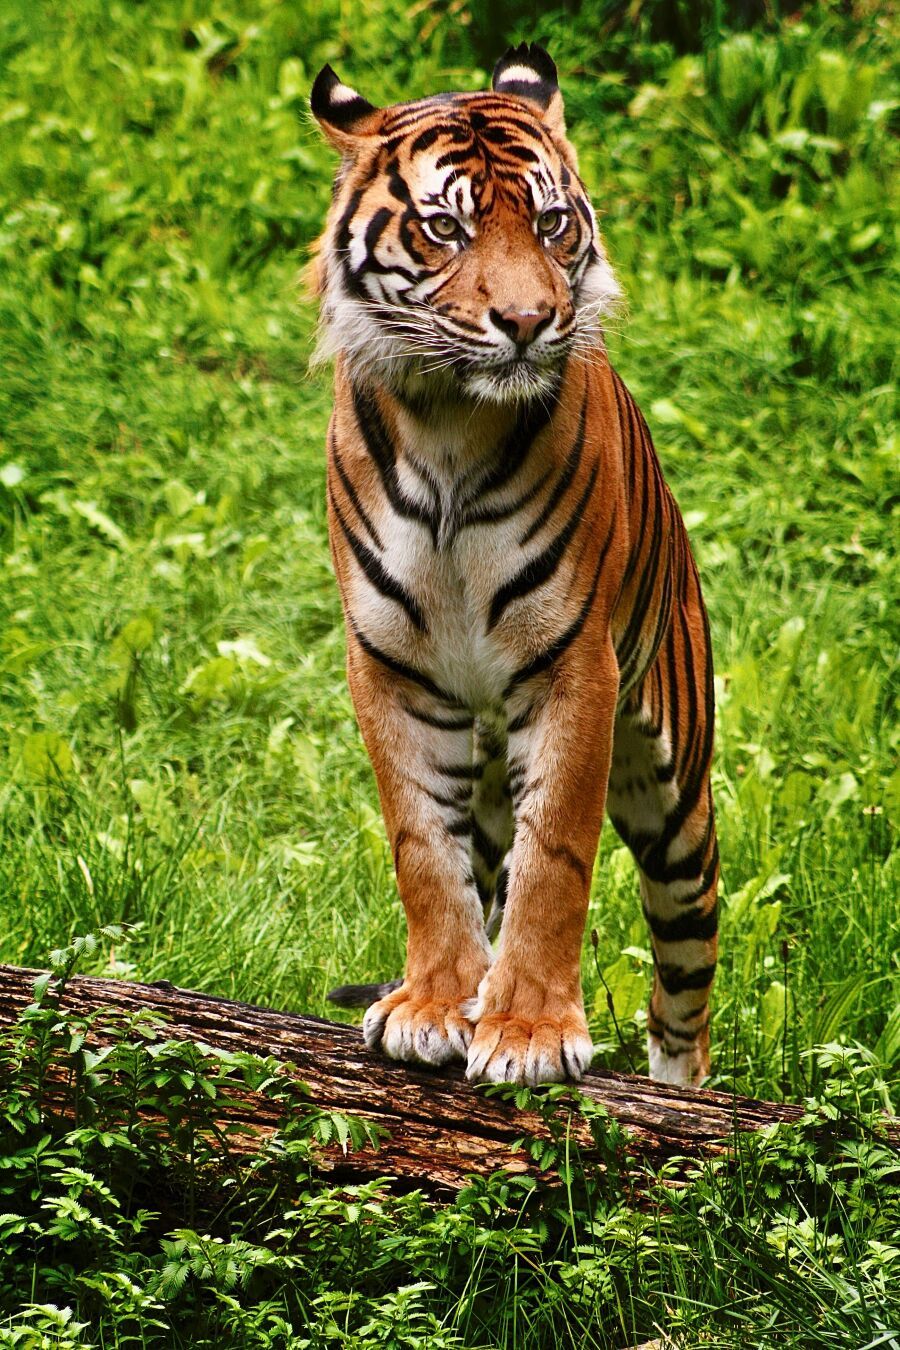 Mr. Tiger

'Tierisch, tierisch' 
#FotoVorschlag
@FotoVorschlag@photog.social